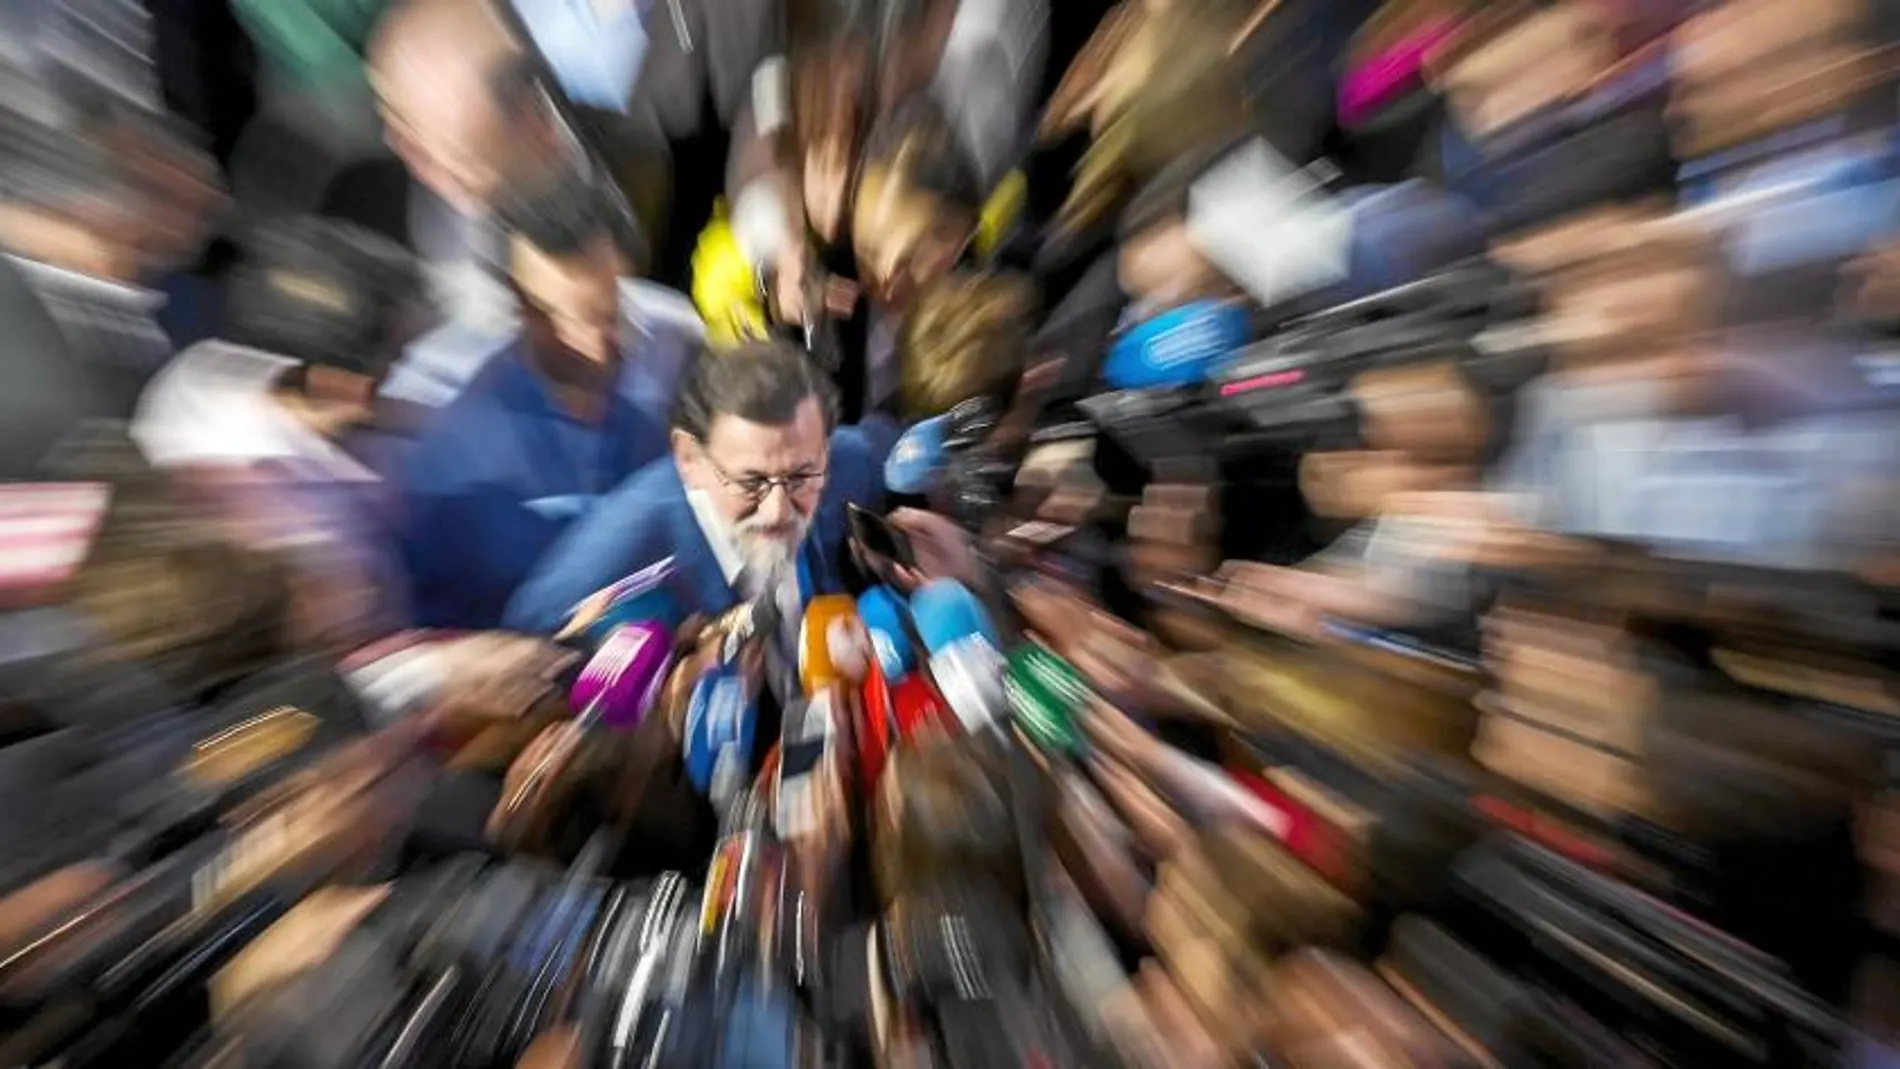 El presidente del Gobierno, Mariano Rajoy, es rodeado por los micrófonos de los periodistas durante la Convención del Partido Popular celebrada en Sevilla, que el partido convocó a principios de abril / Alberto R. Roldán